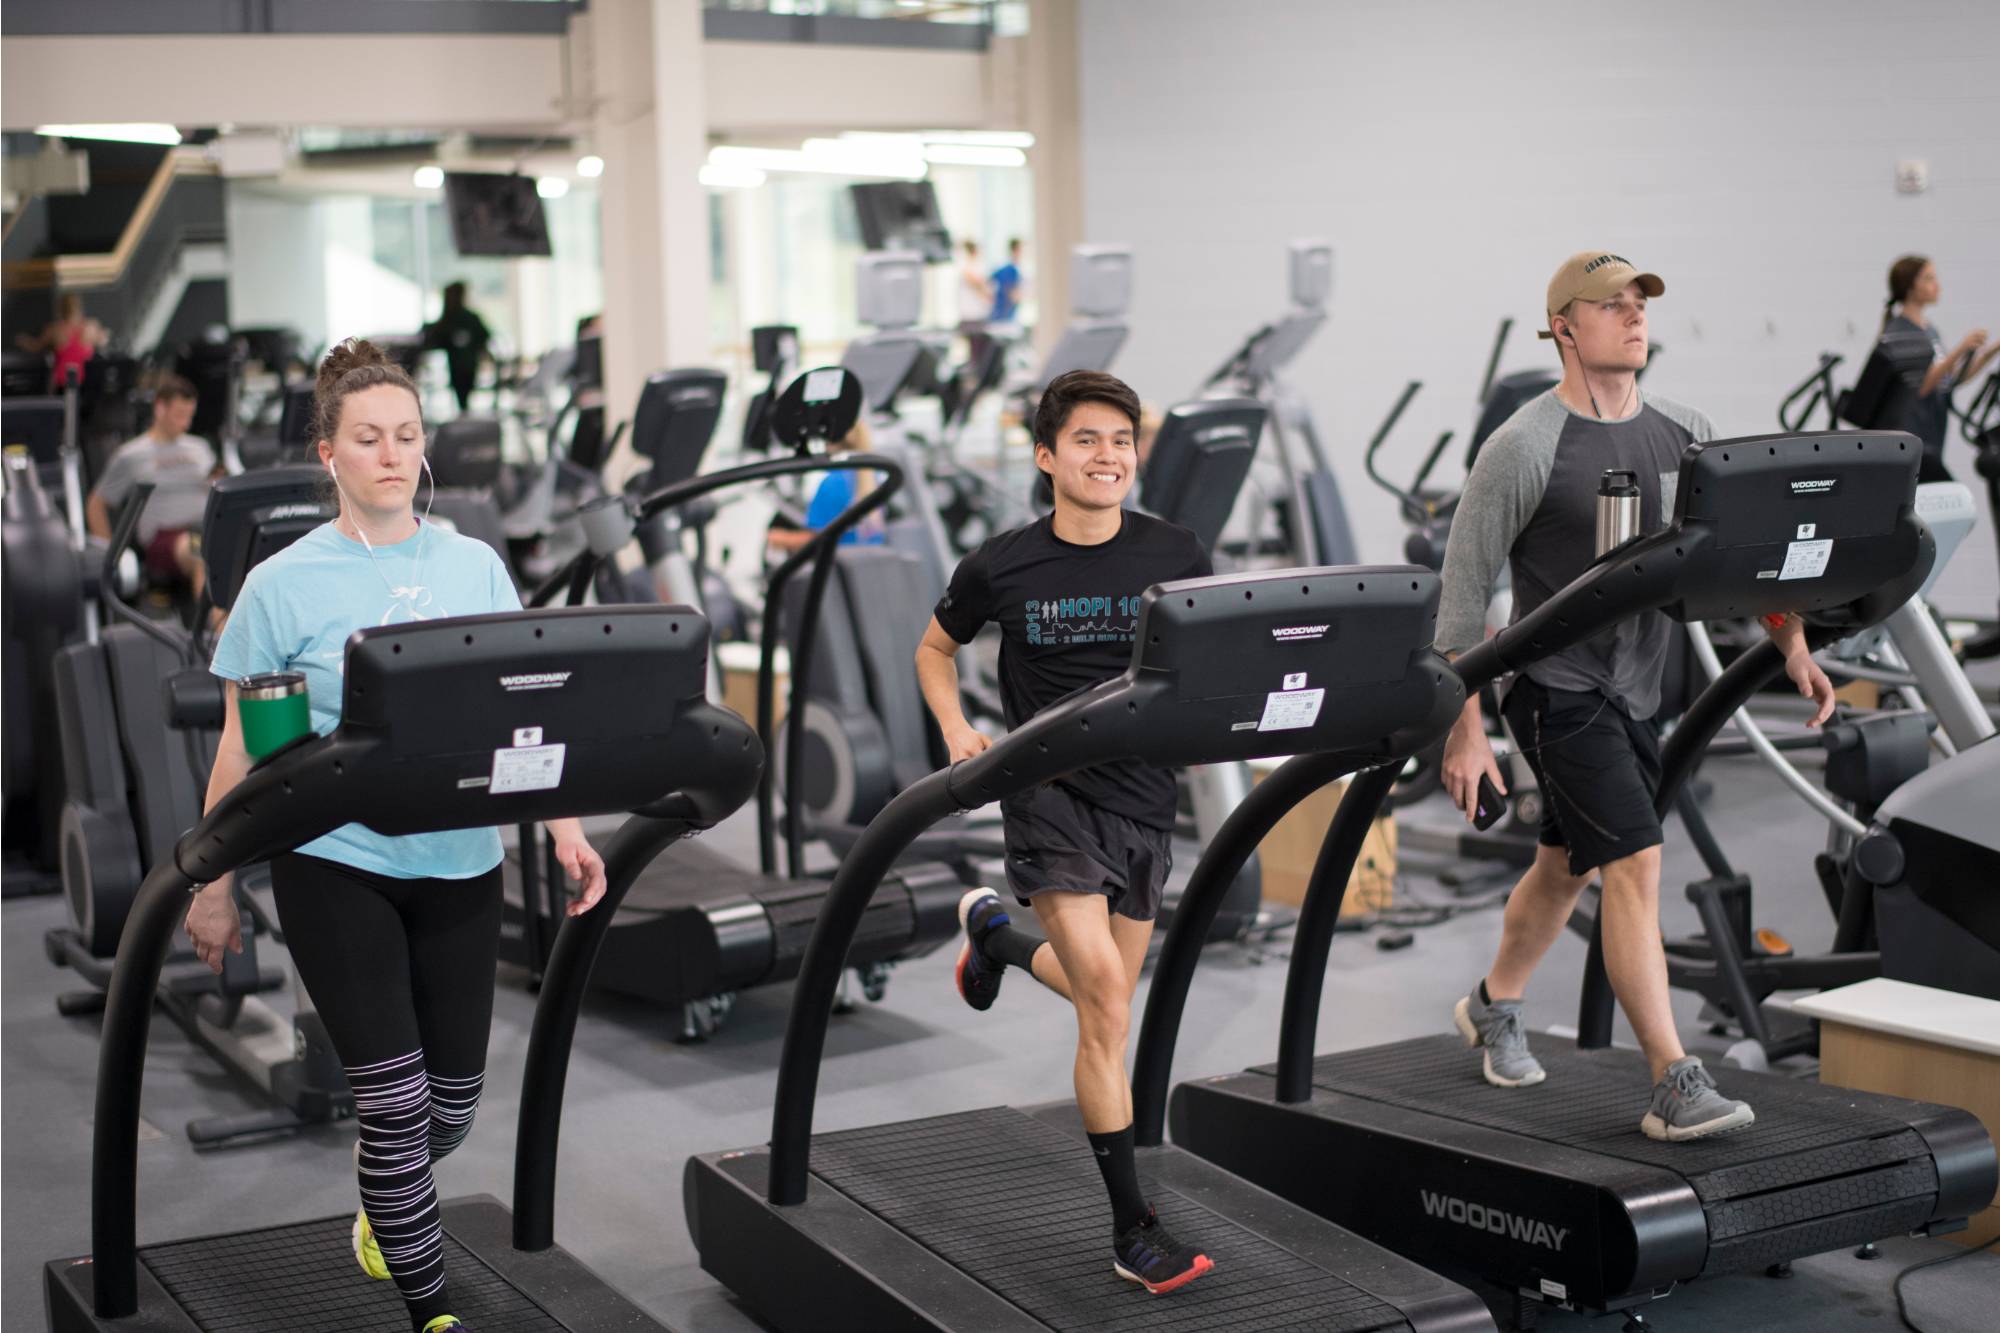 Students running on treadmills